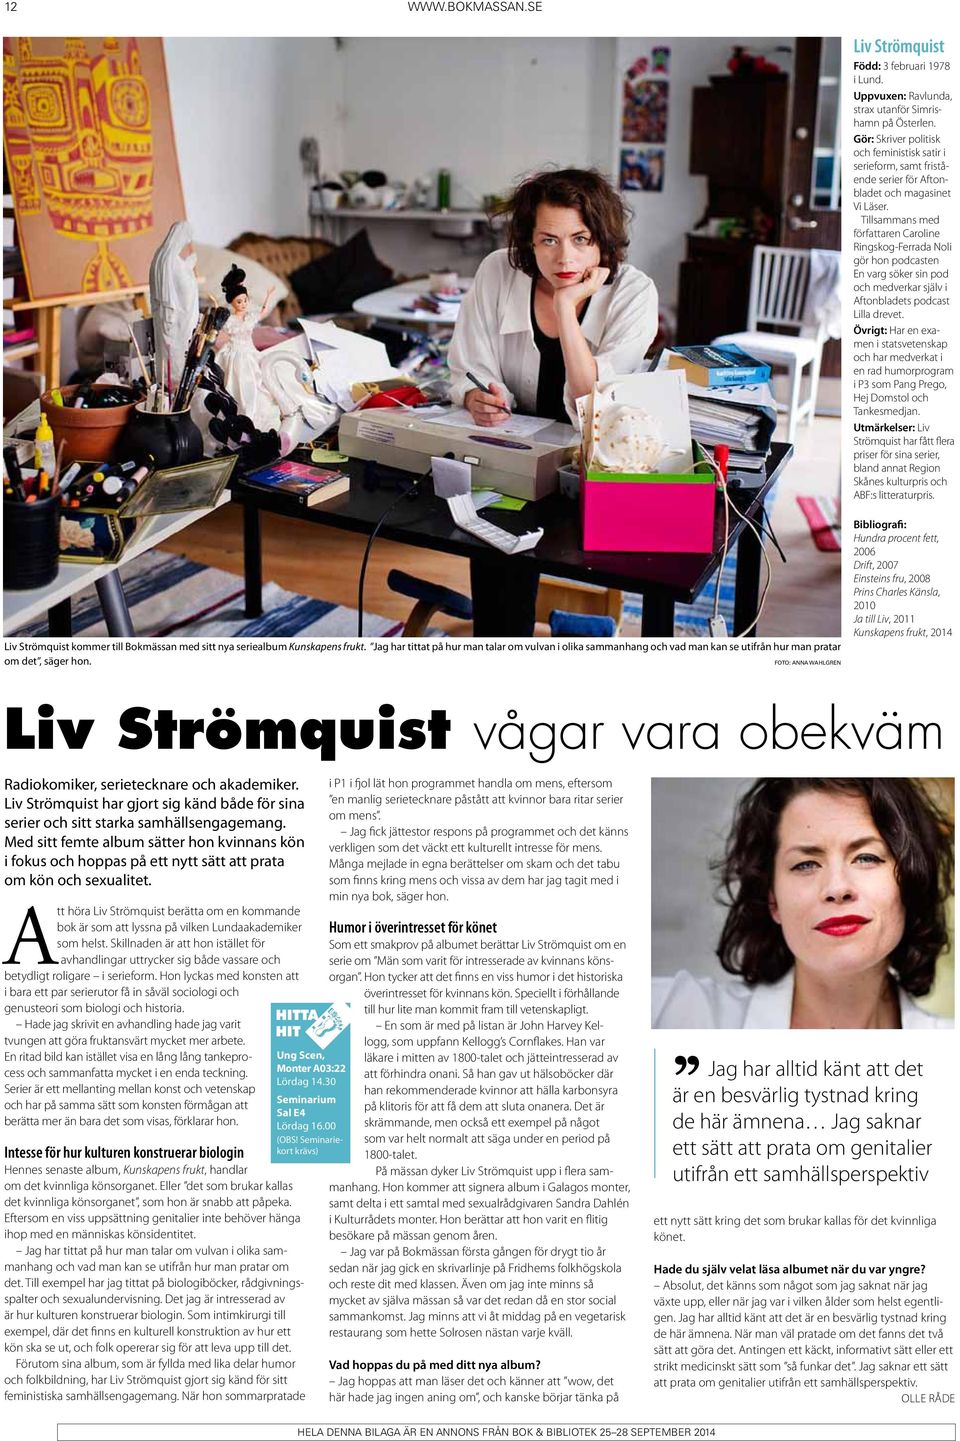 Tillsammans med författaren Caroline Ringskog-Ferrada Noli gör hon podcasten En varg söker sin pod och medverkar själv i Aftonbladets podcast Lilla drevet.